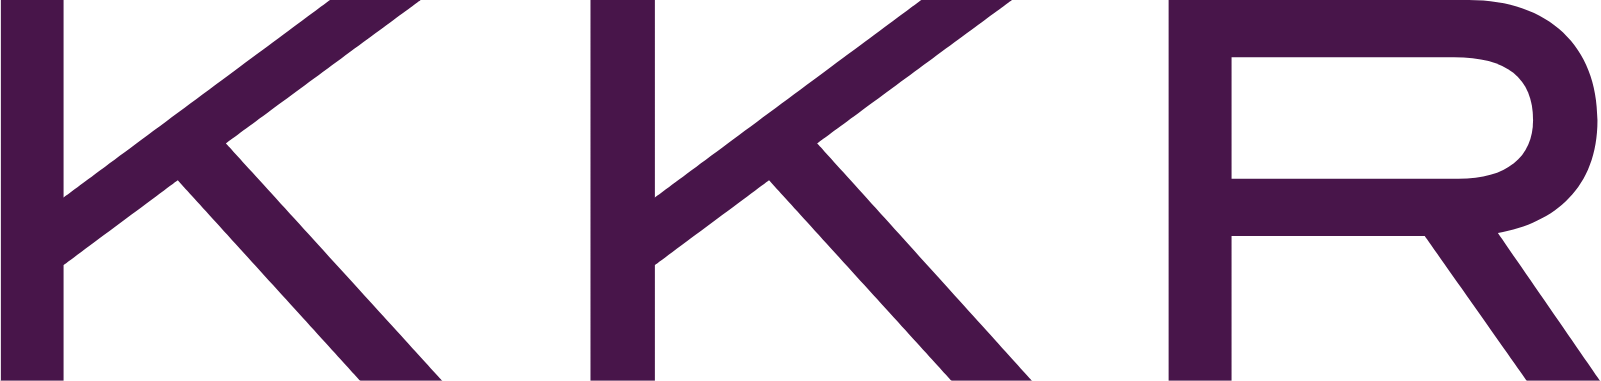 KKR & Co. logo (transparent PNG)